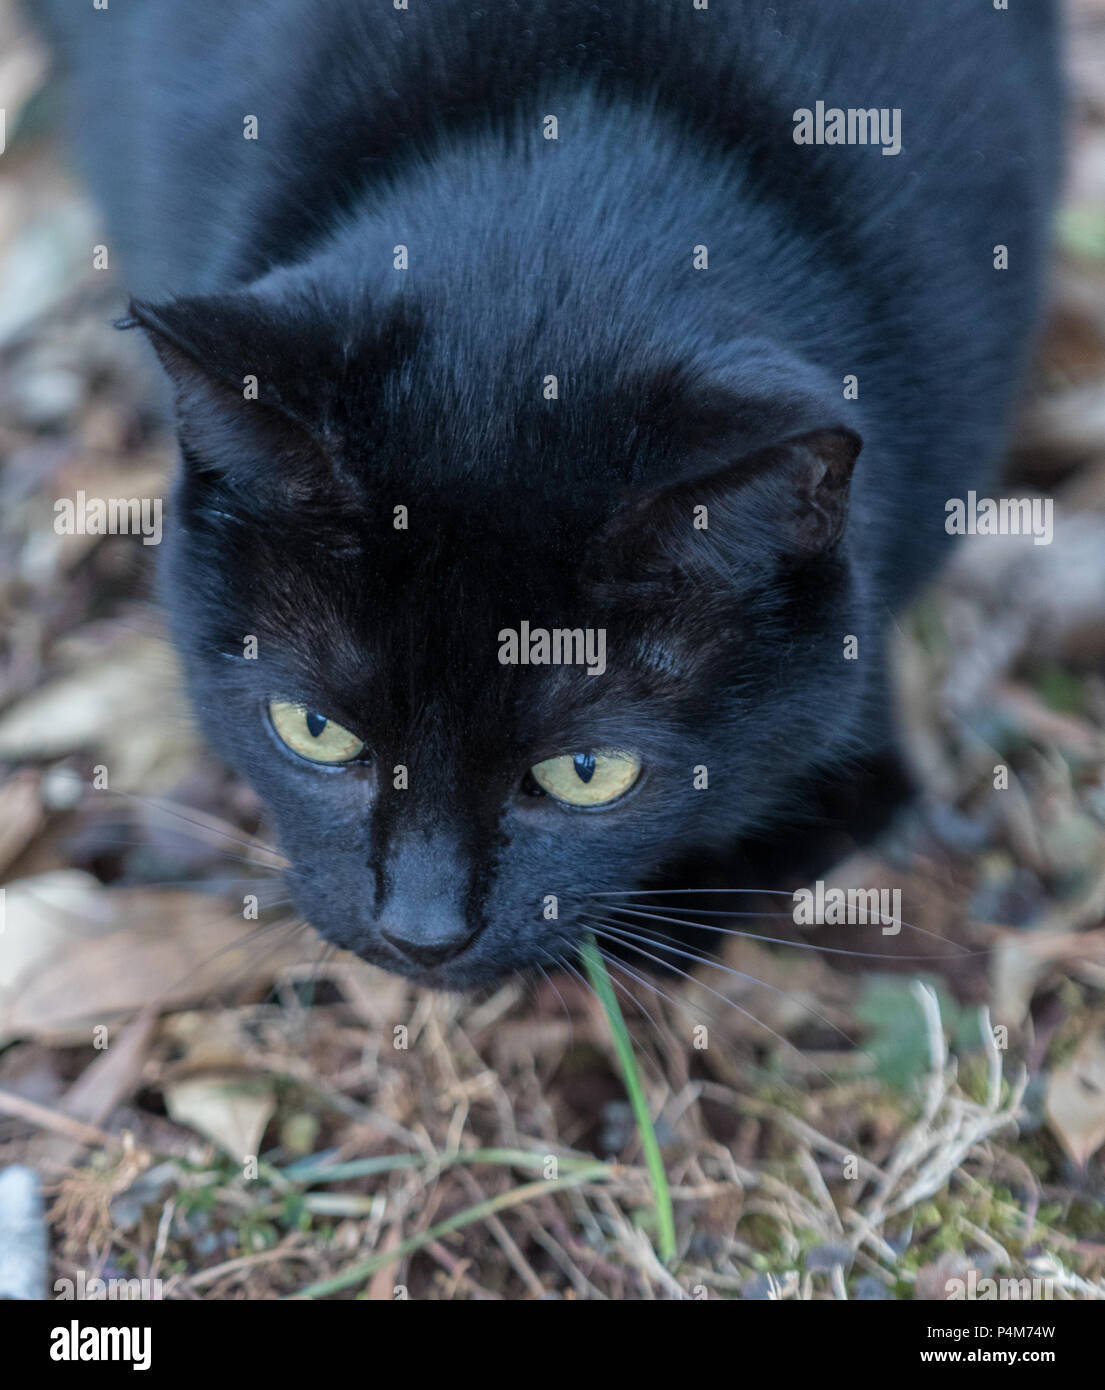 Un gato negro, centrado y listo para saltar, tomada desde arriba. Foto de stock